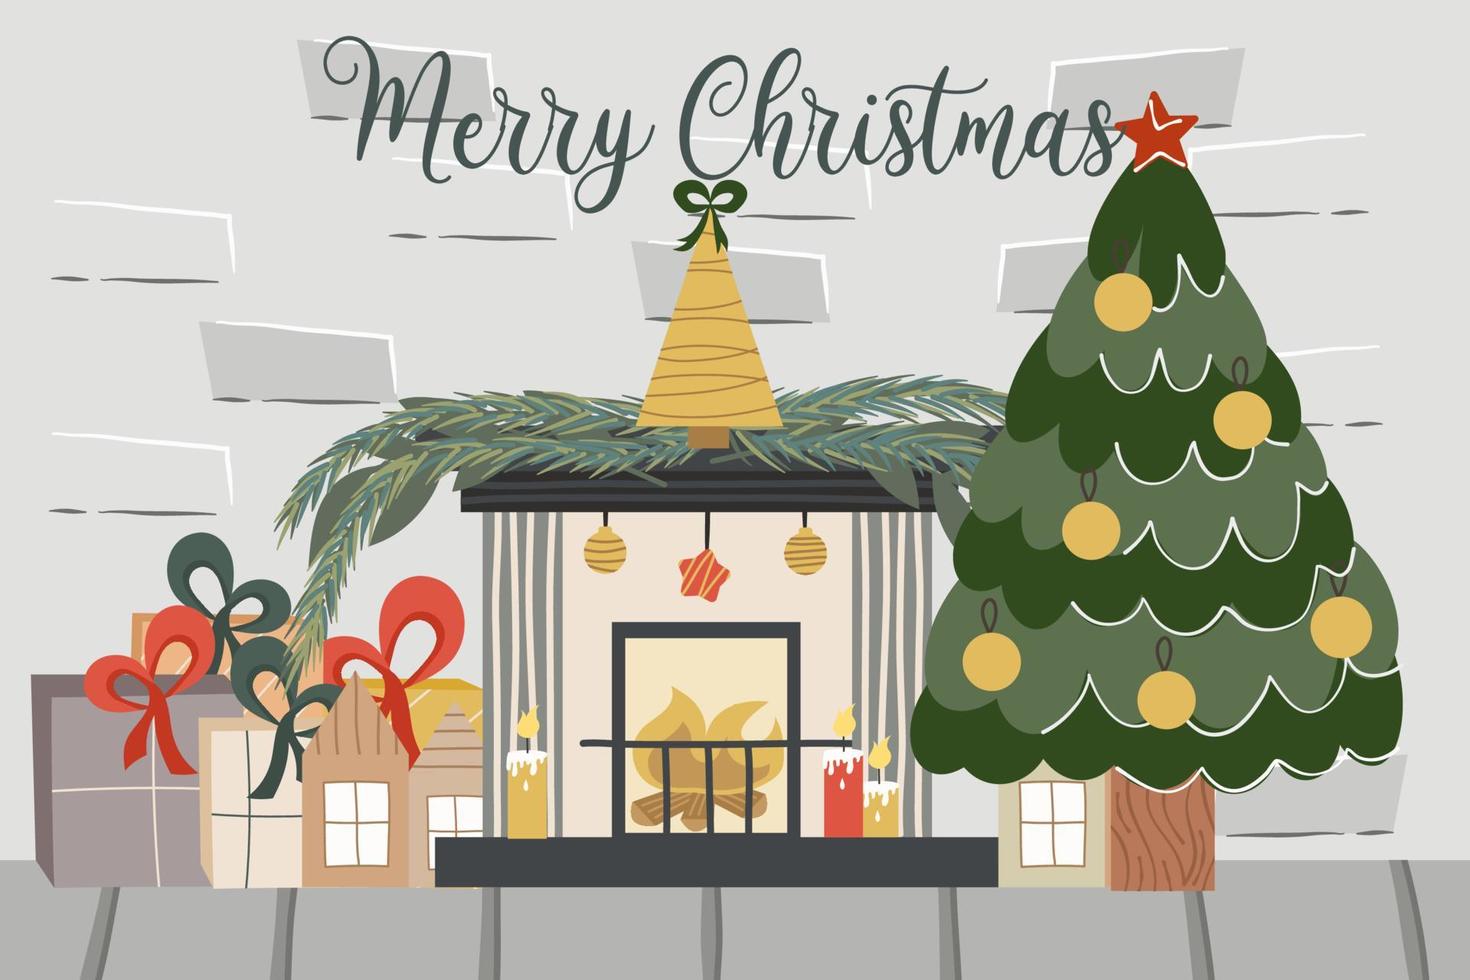 kerst baksteen loft met open haard, dennenboom, tekst merry christmas.decorated met ballen sparren en open haard kaarsen en geschenken. vectorillustratie van een feestelijk interieur. vector